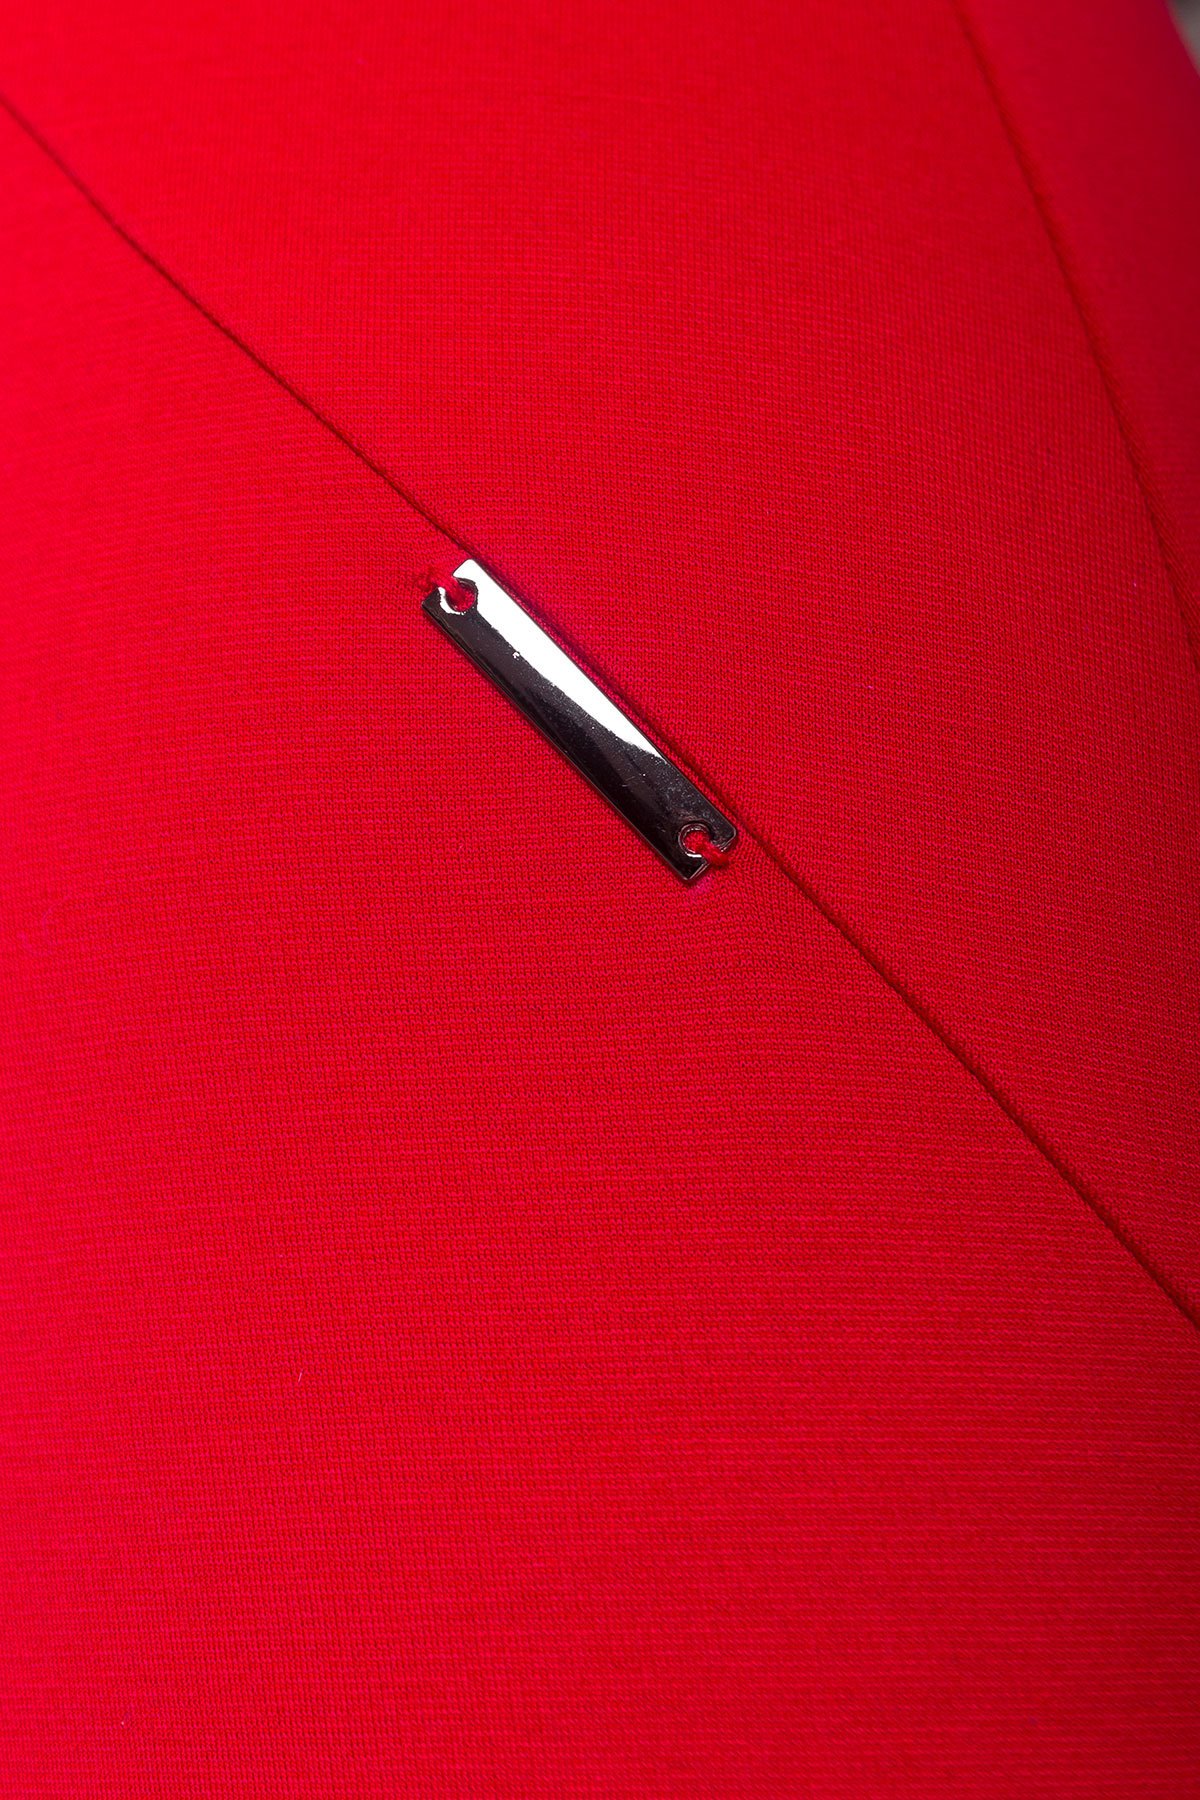 Платье с круглым вырезом Альтера 510 АРТ. 6999 Цвет: Красный - фото 3, интернет магазин tm-modus.ru